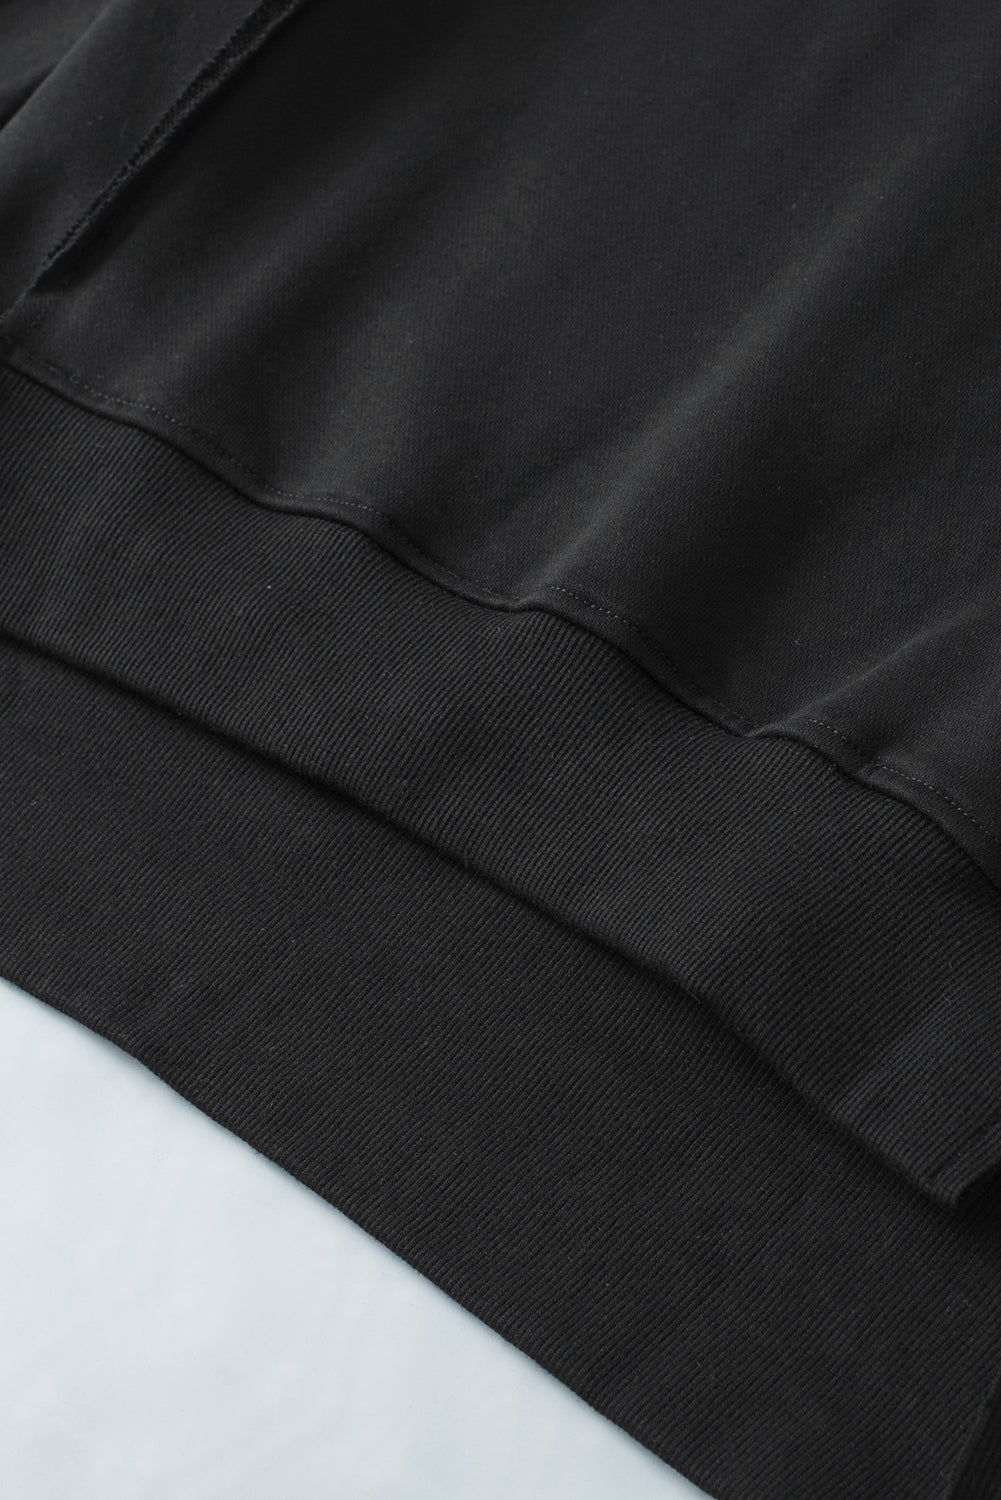 Crna majica s otvorenim šavovima s prorezima na ramenima i visokim niskim porubom